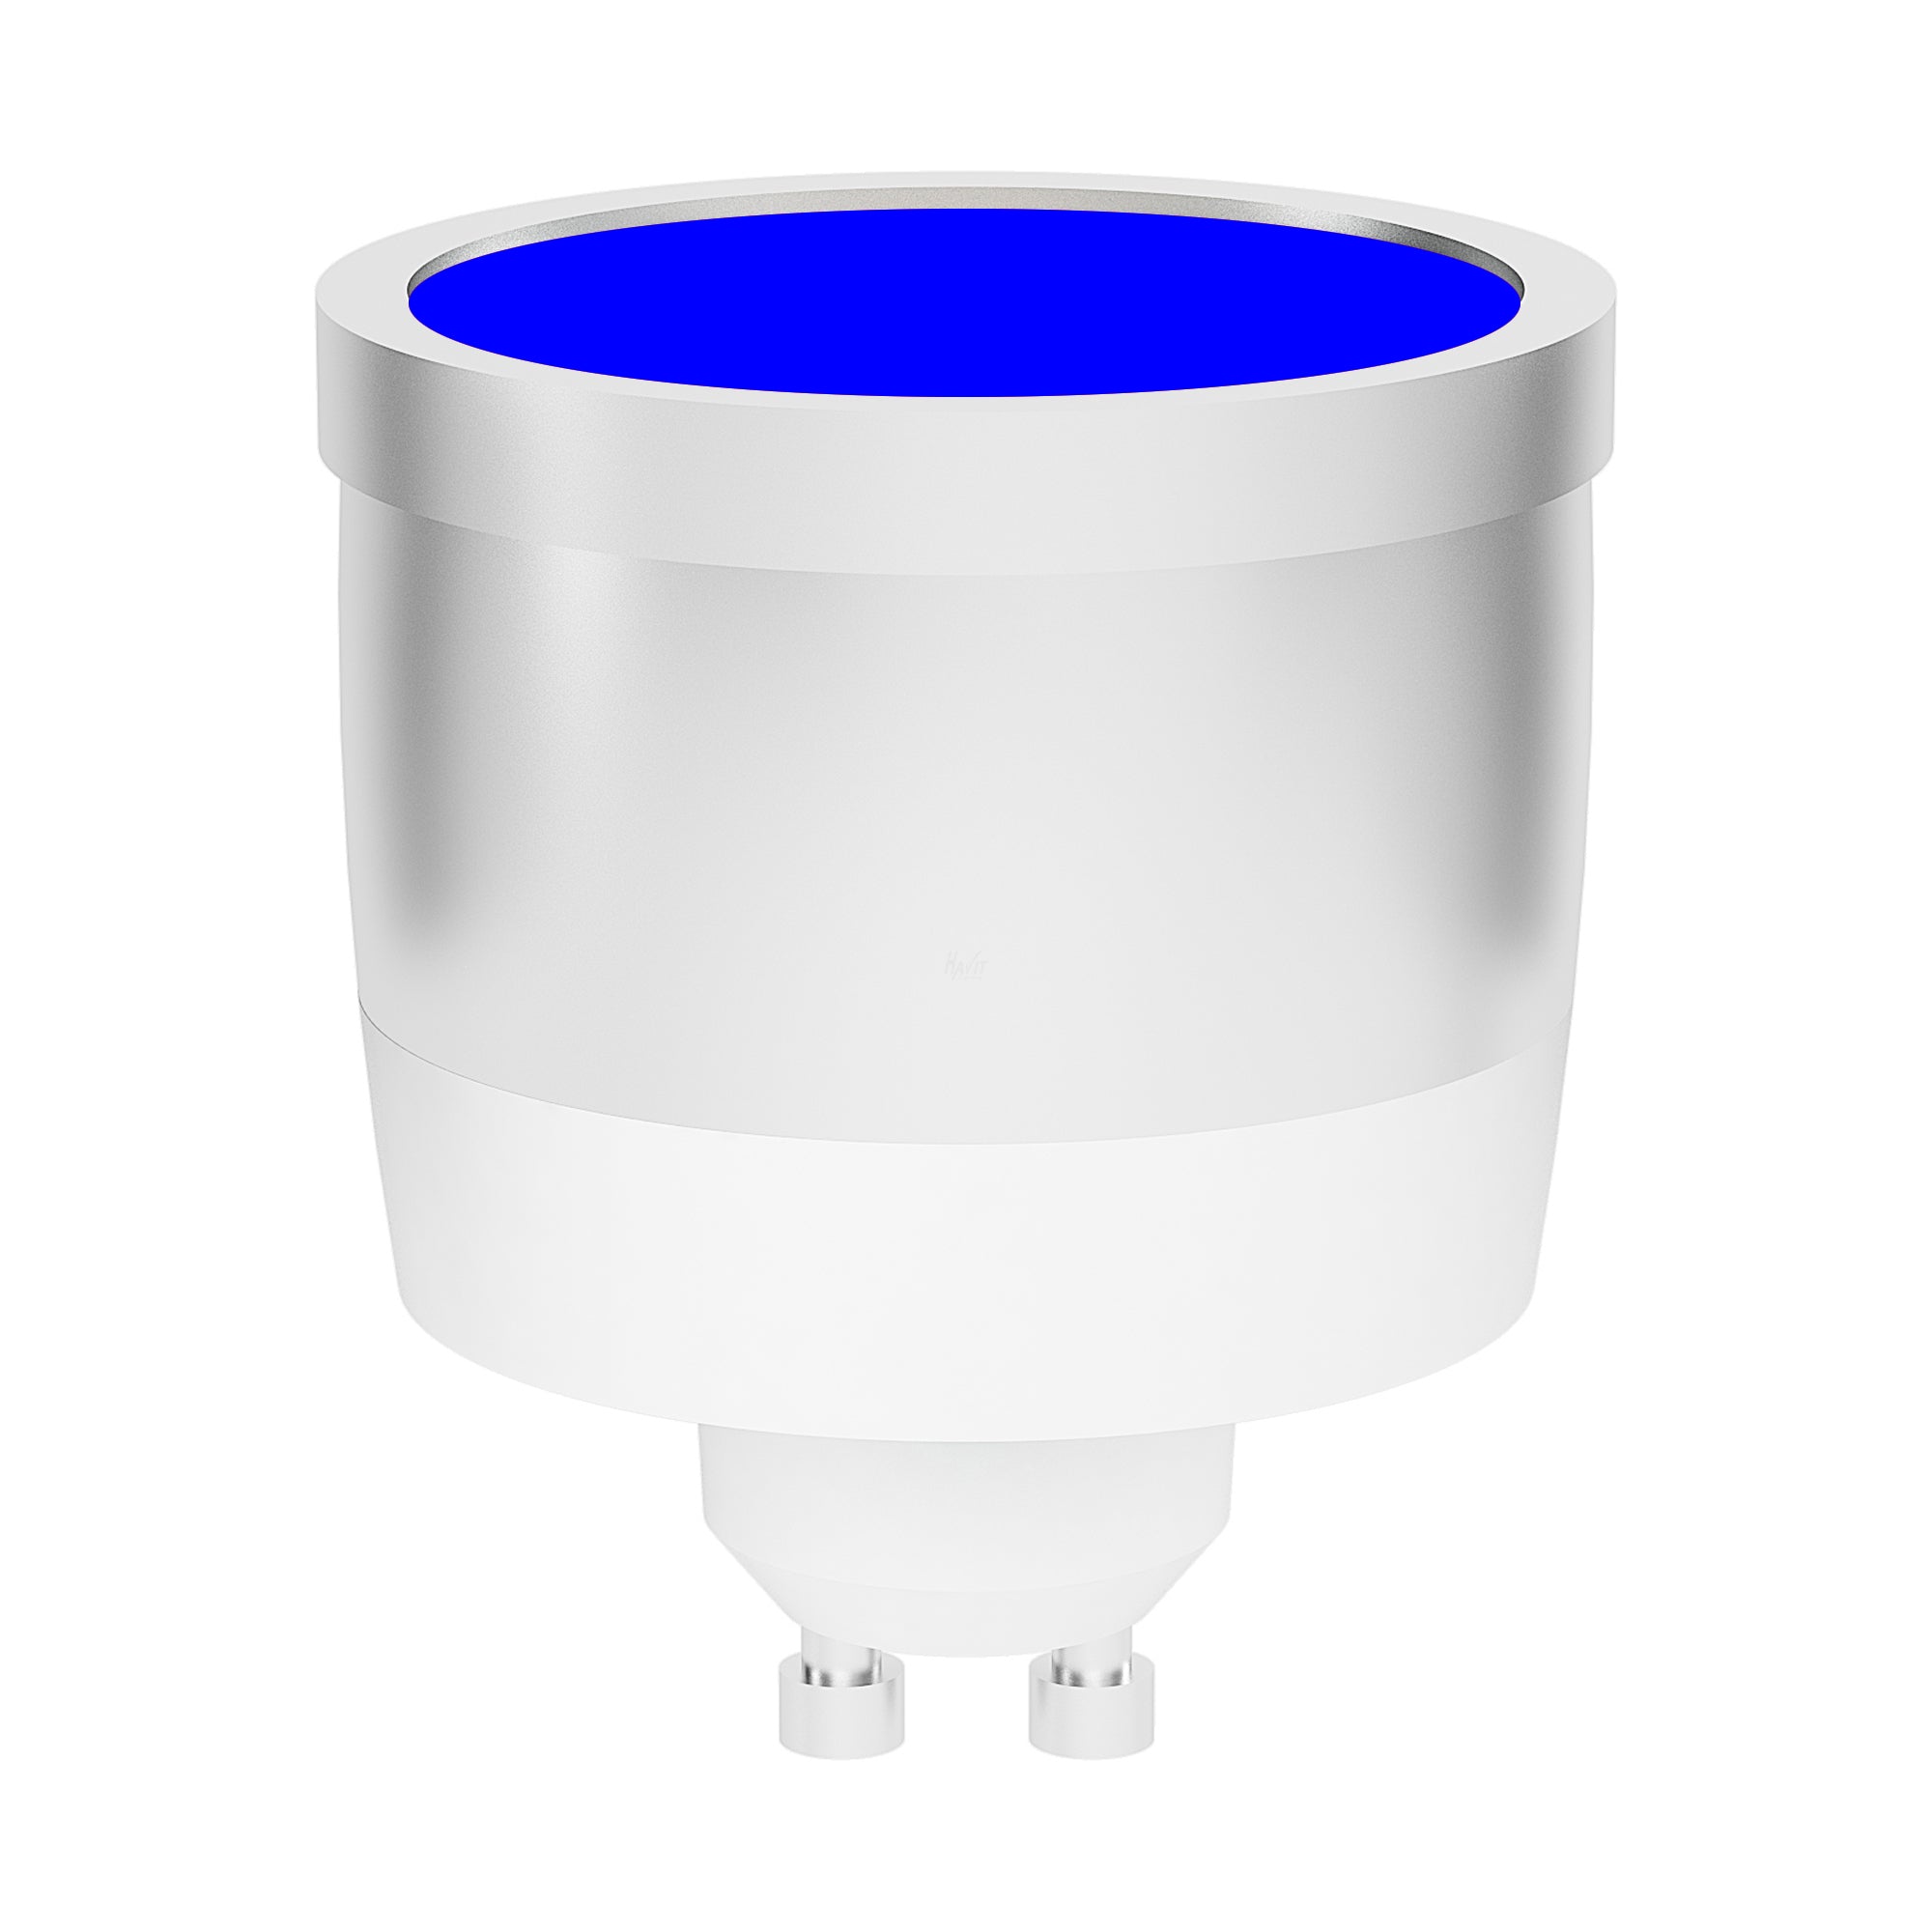 HV9506B - Blue 5w 240V GU10 LED Globe